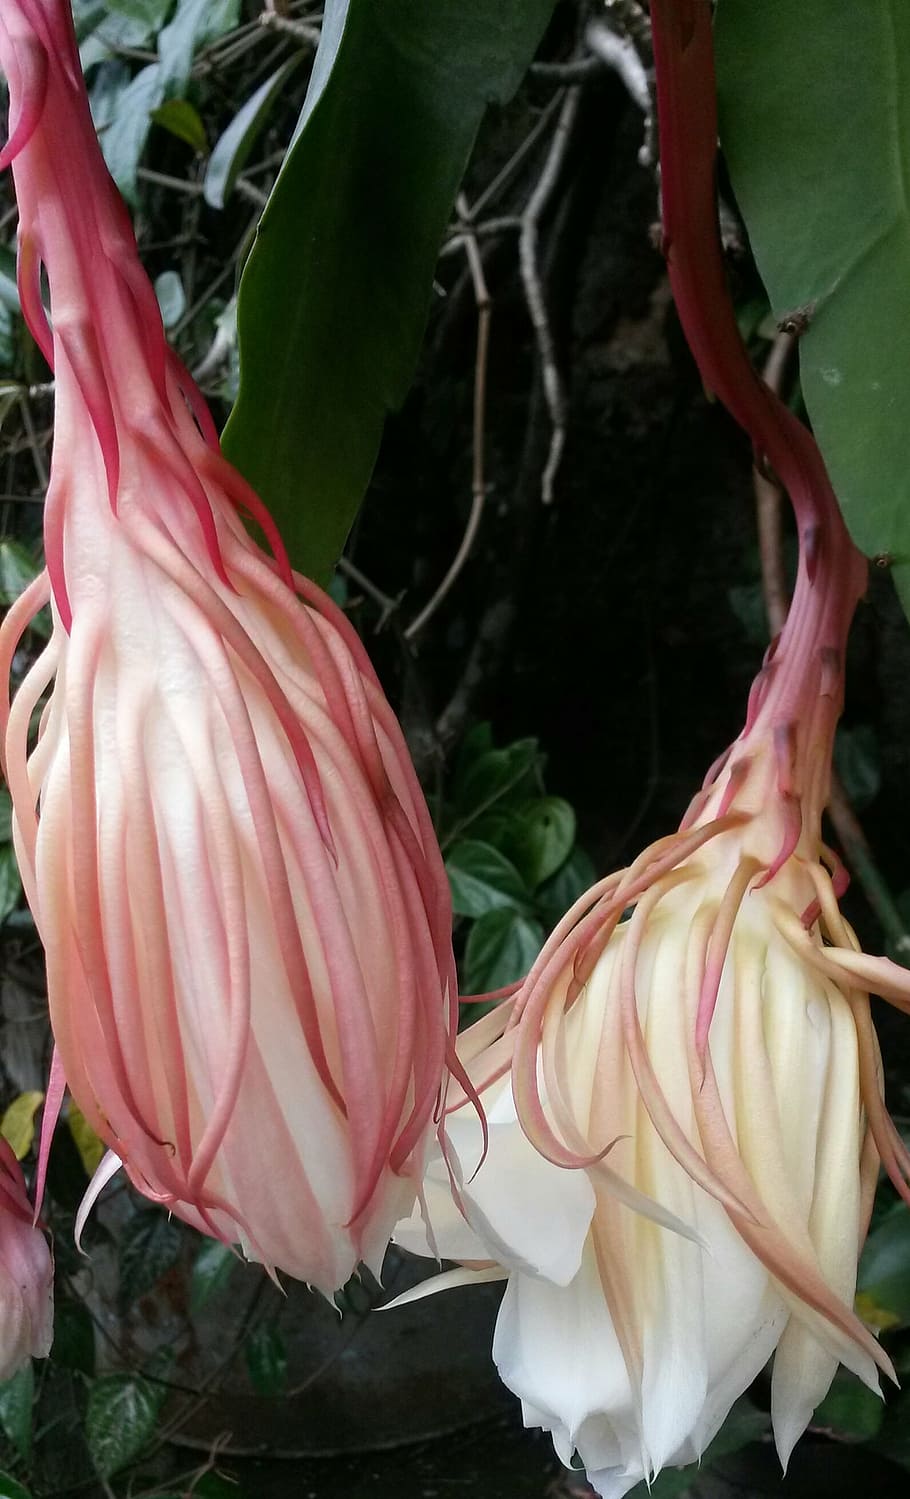 epiphyllum anguliger, flor, raro, javanês, indonésia, natureza, tropical, beleza, exótica, ao ar livre